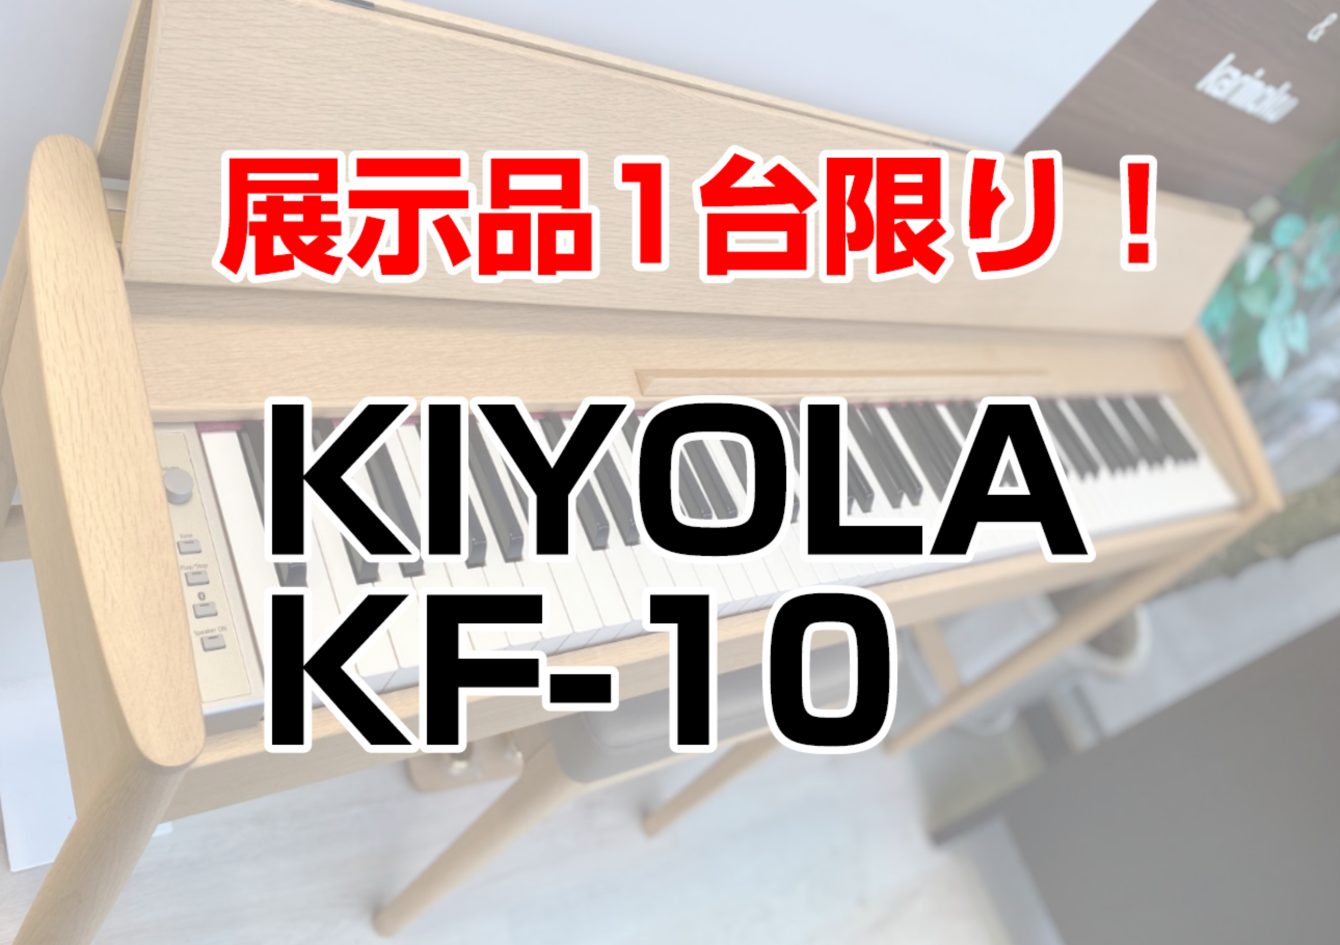 こんにちは！長崎駅前店にて、展示品1台限りの電子ピアノ特価品を展示中です！もちろん試弾も可能です。ご希望の方は事前にお電話でご予約頂きますとスムーズです。お気軽にお問合せ下さい。 本日は、きよら KF-10をご紹介いたします。 CONTENTSカリモク×Roland　こだわりの家具調デザインと最新の […]